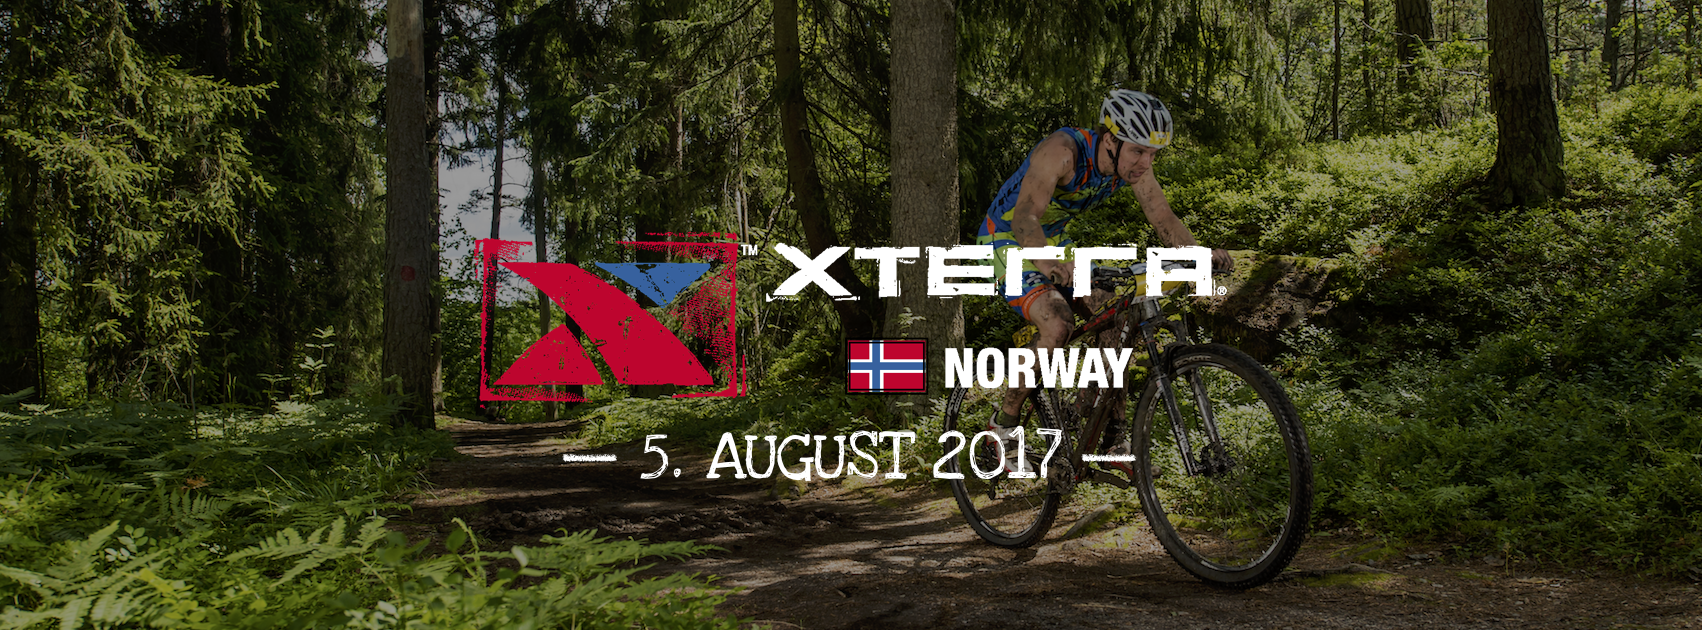 XTERRA Norway 2017